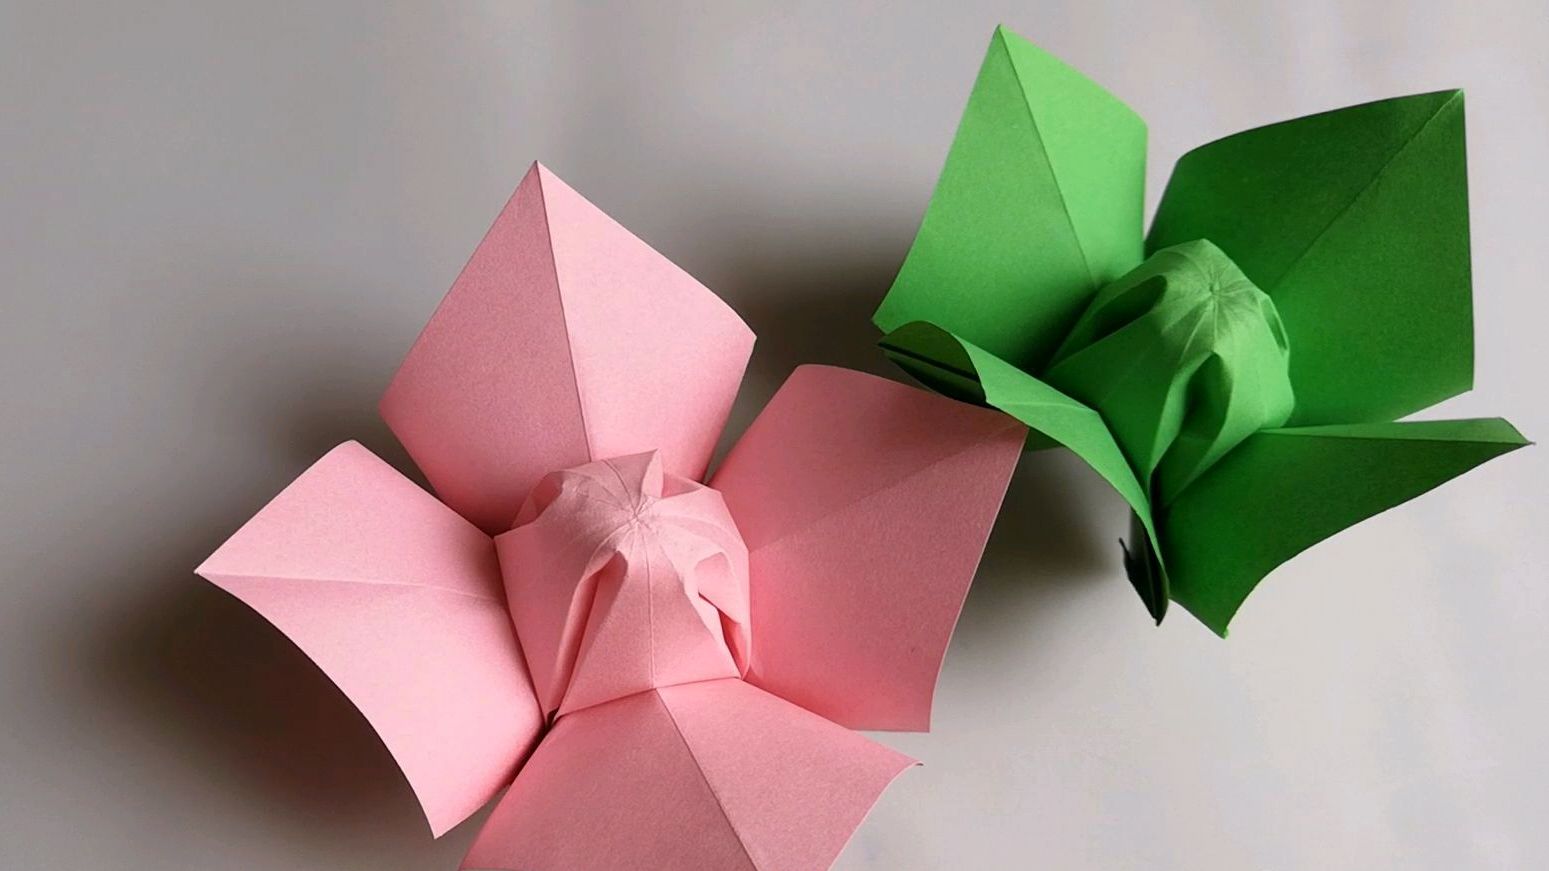 手工初学者的折纸教程 03:50 来源:好看视频-简单的折纸花朵教程